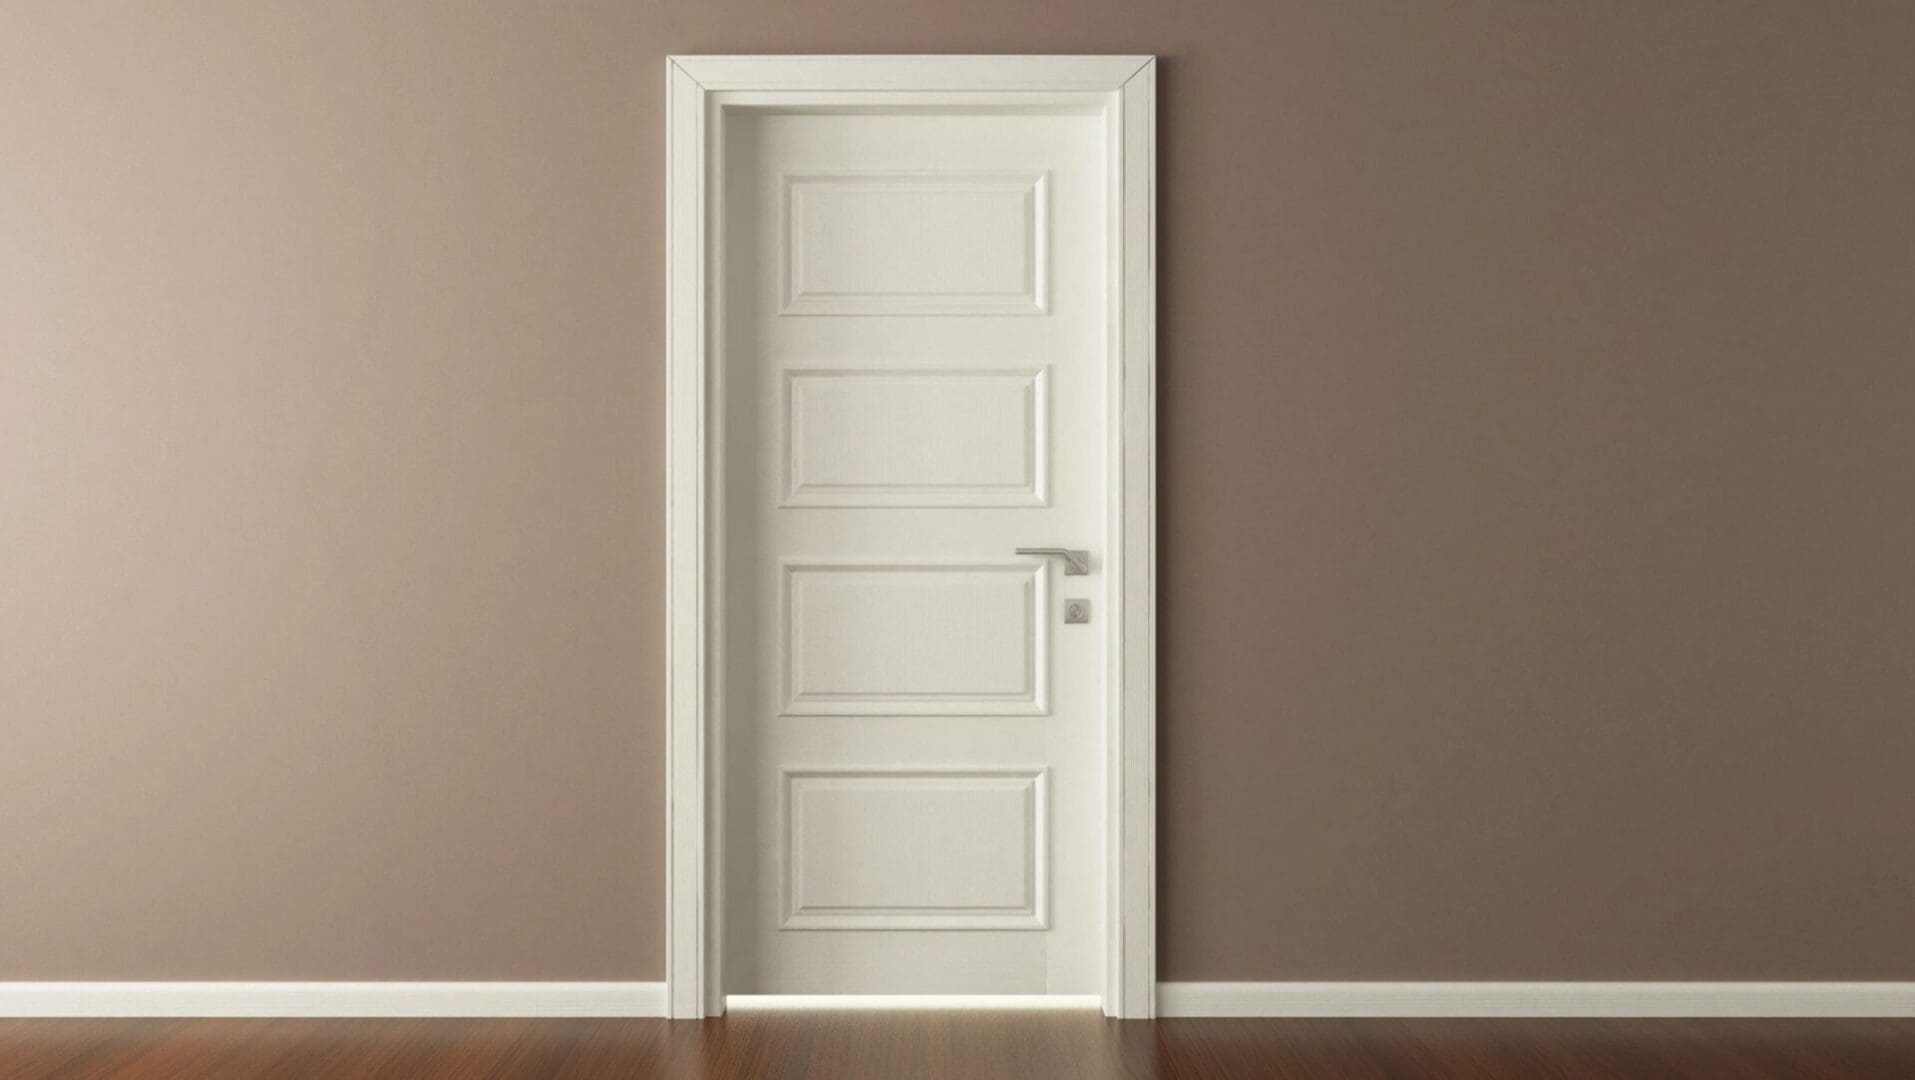 A white door in an empty room.